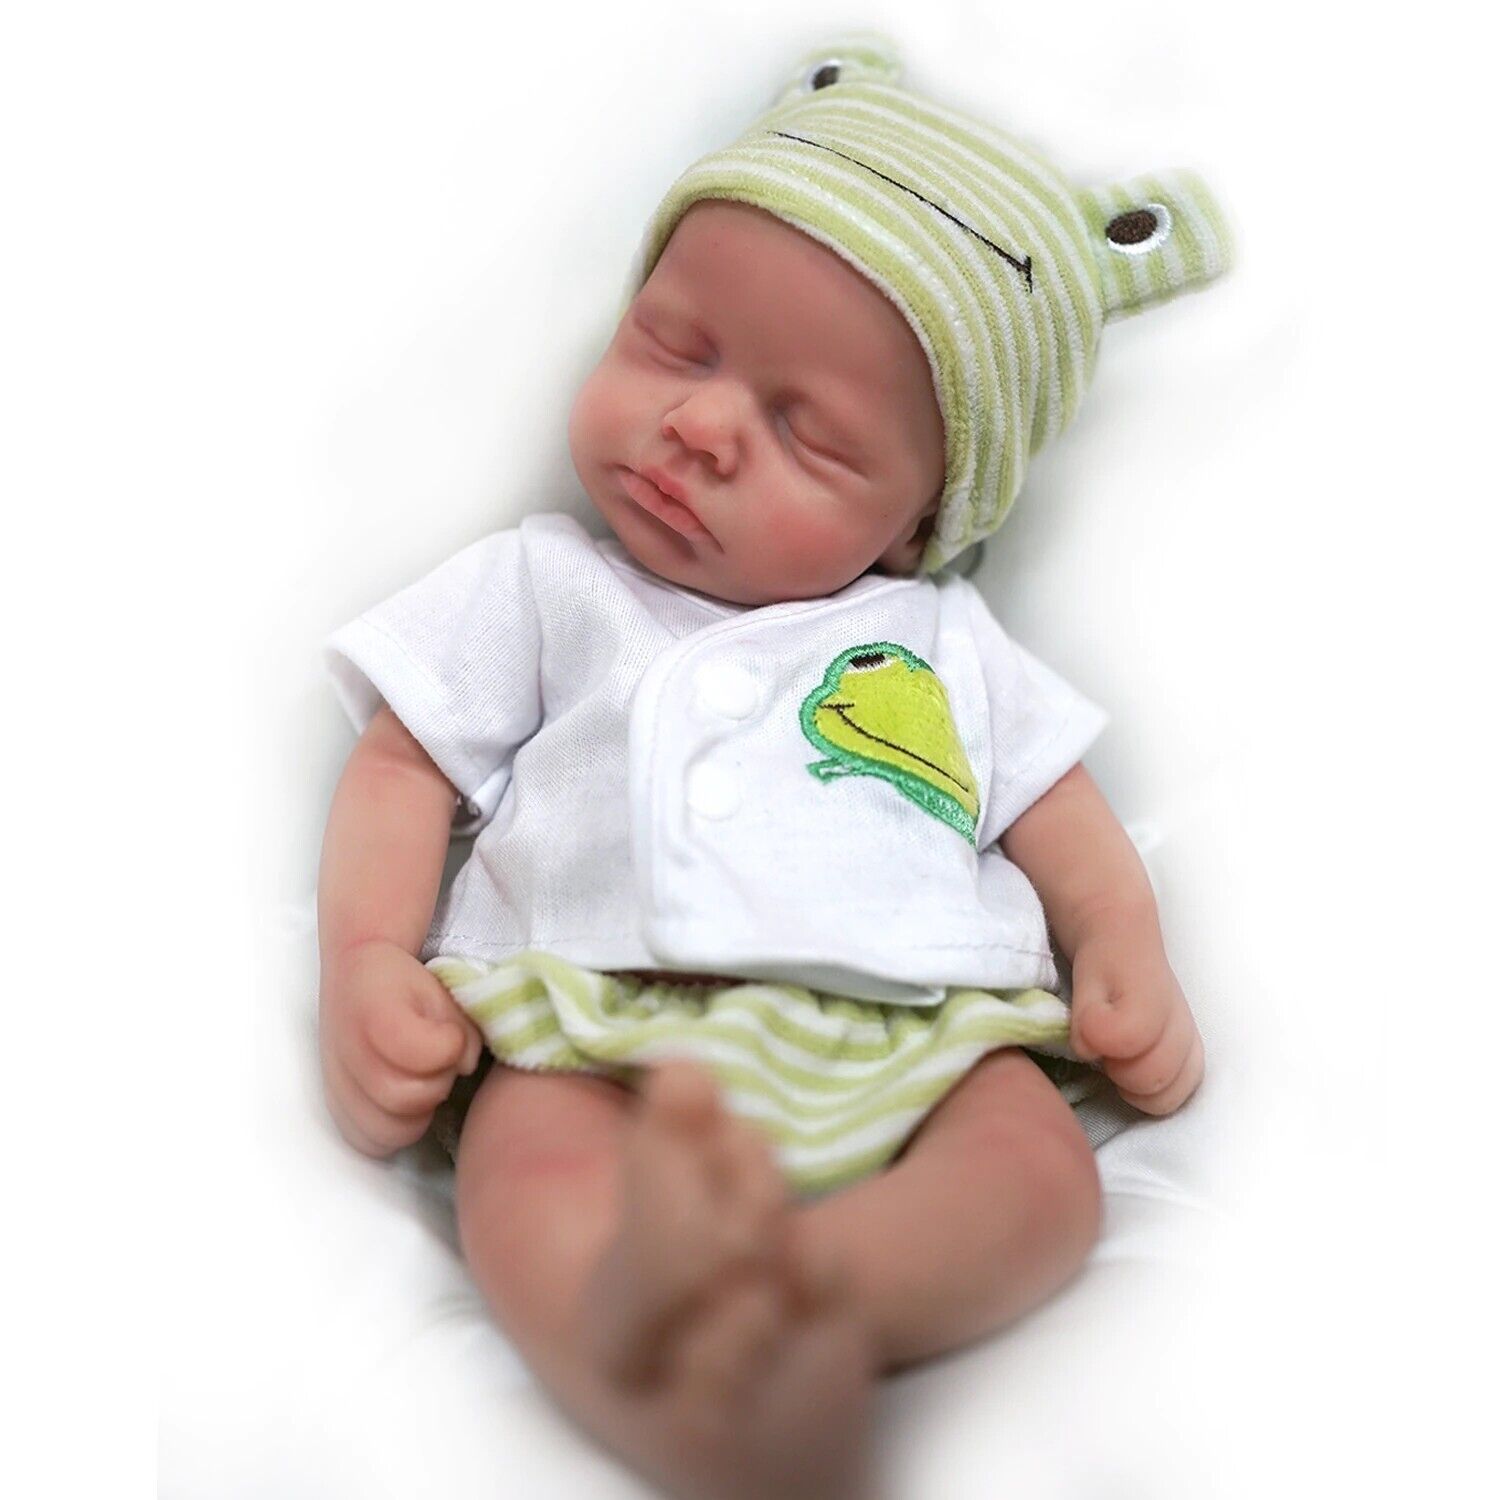 Baby Boy Doll Full Body Silicone Lifelike Reborn Newborn Doll Toy 12" Plus Gift Unbranded - фотография #5